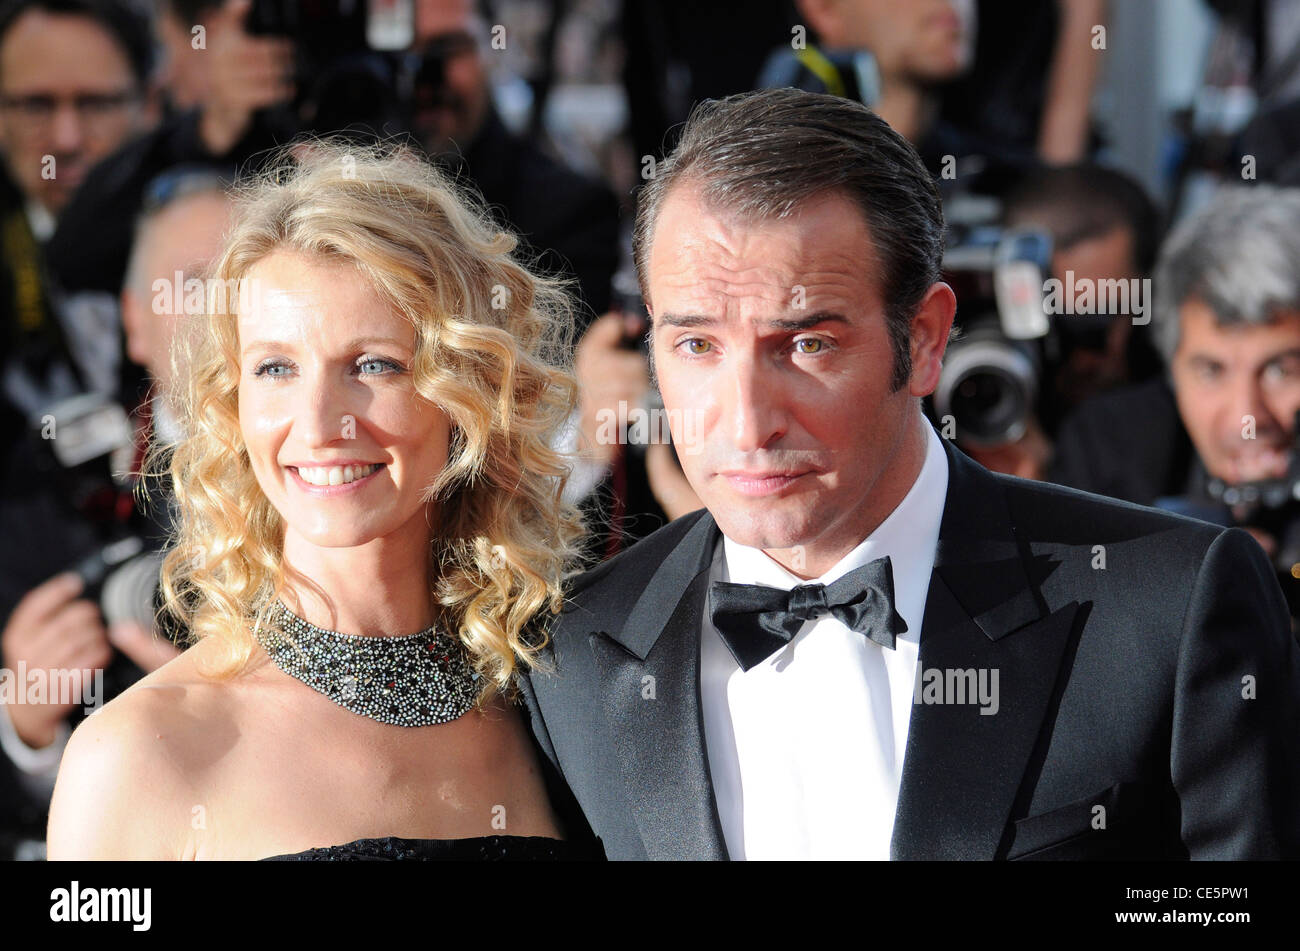 Französischer Sie Schauspieler Jean Dujardin und Alexandra Lamy vor der Premiere von "The Artist" während der 64. Filmfestspiele von Cannes, Frankreich. Stockfoto